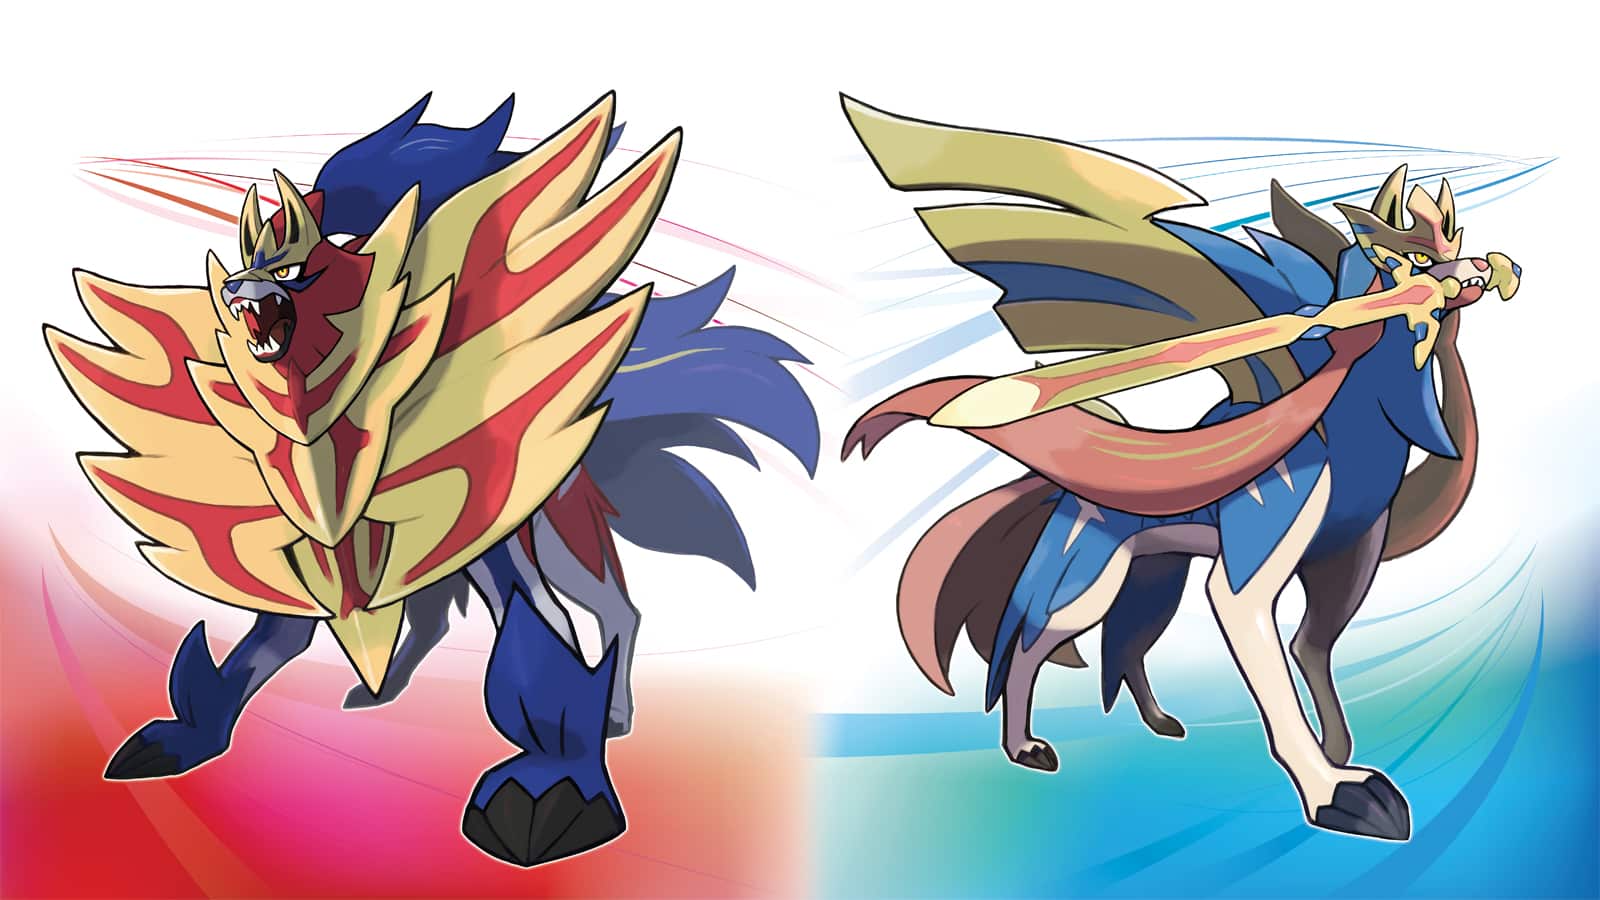 What does shiny Zacian/Zamazenta look like? - PokéBase Pokémon Answers